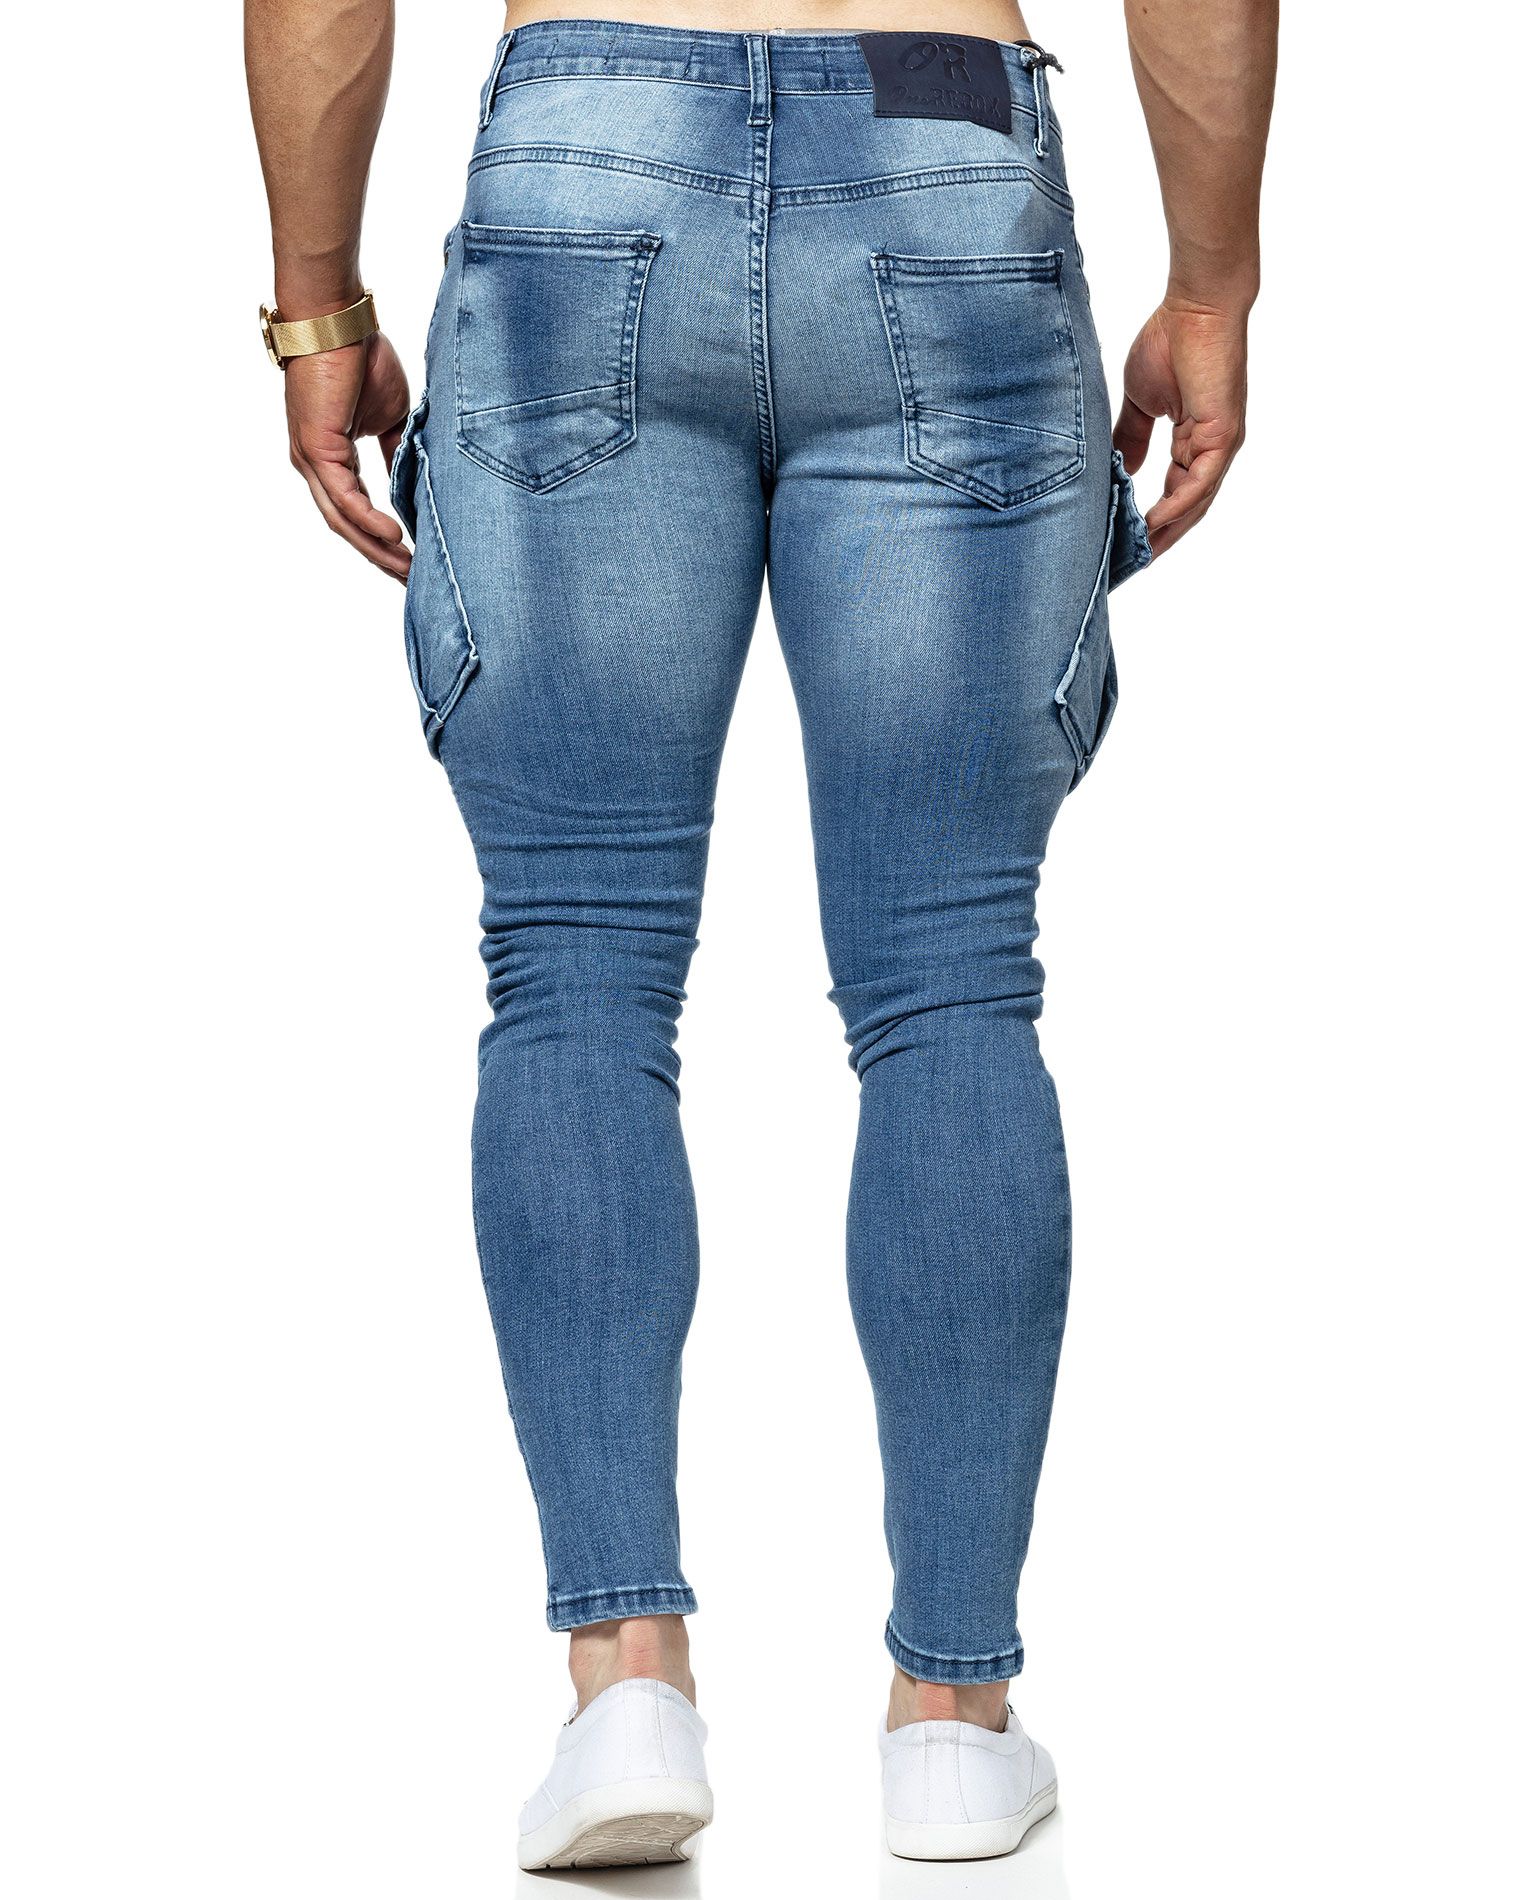 Clipsaz Jeans Blue Jerone - 8016 - Jeans - Jerone.com